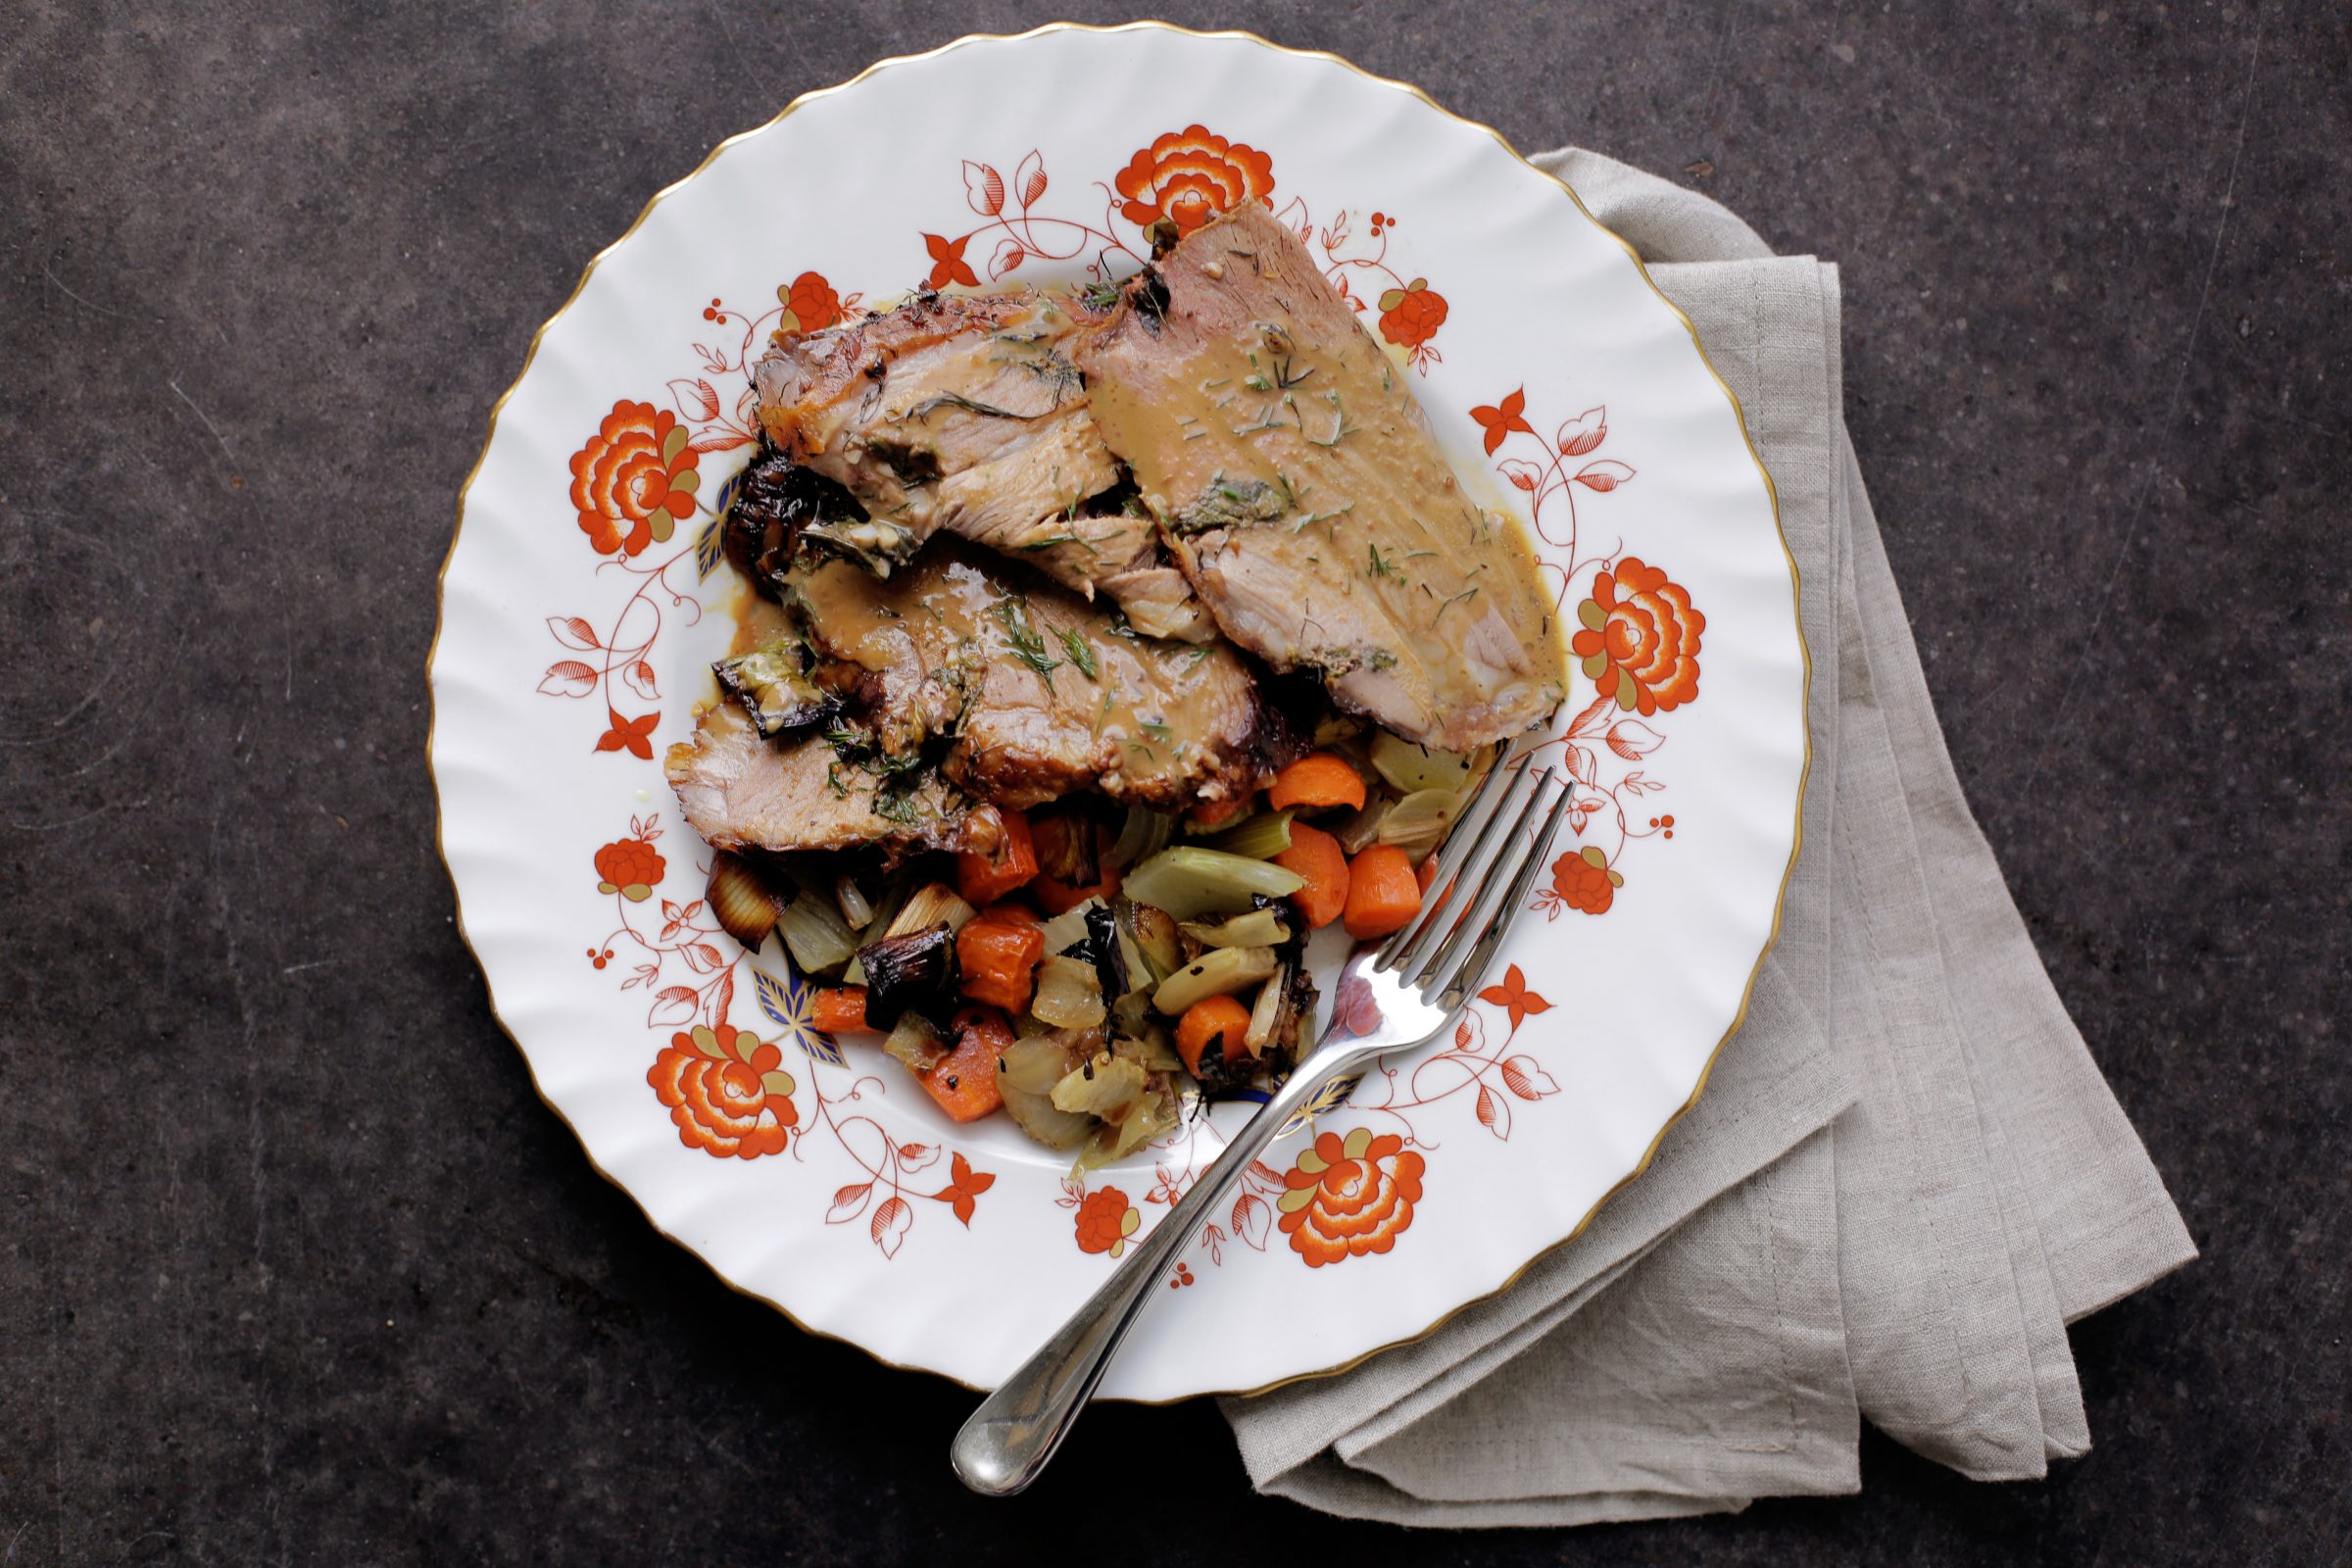 Andrew Zimmern's recipe for roast leg of lamb